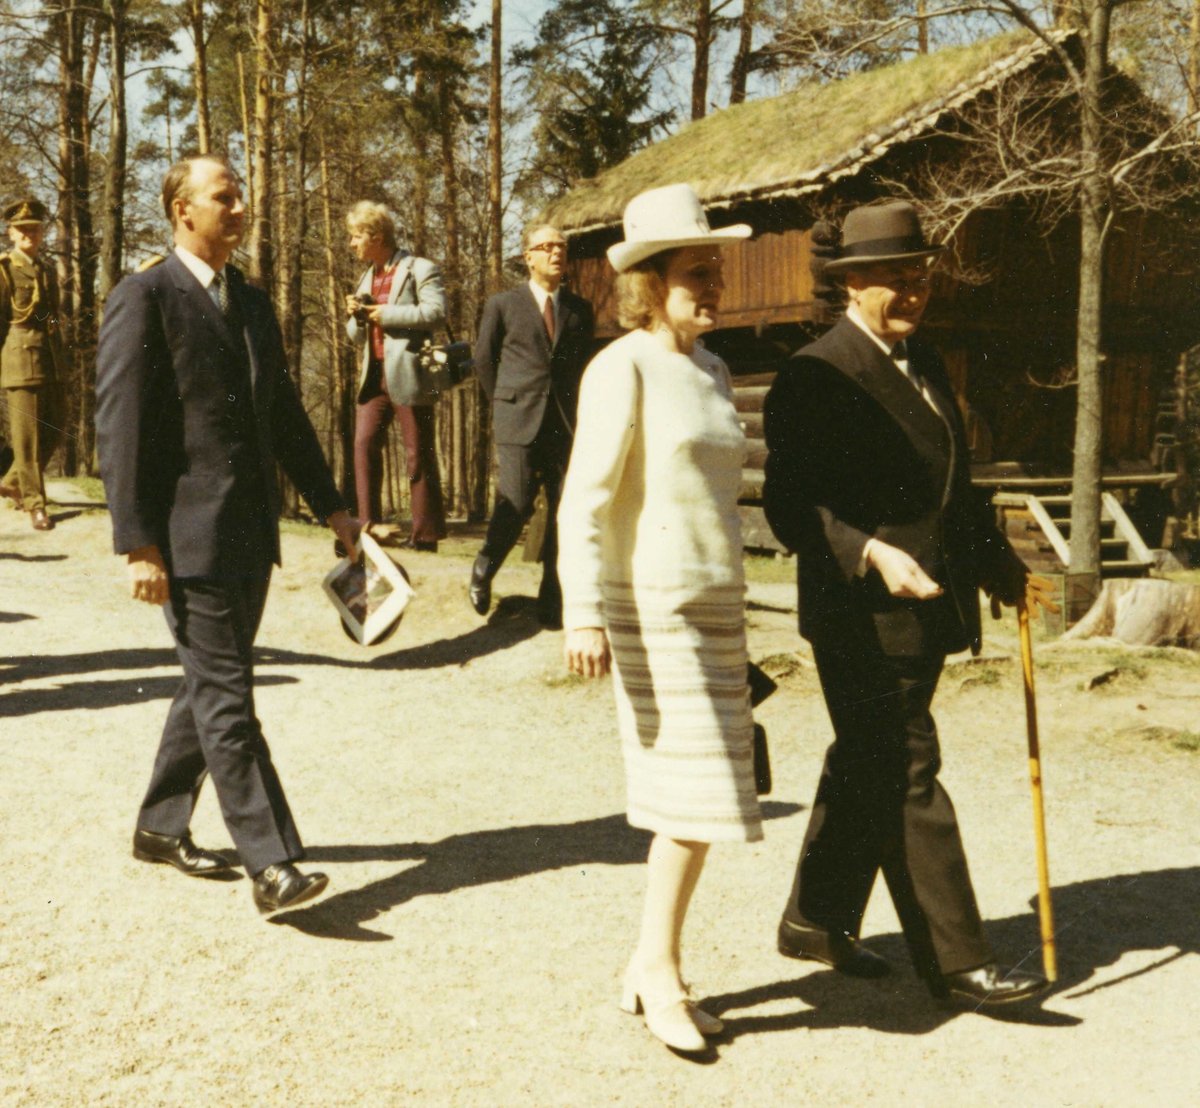 Islands president besøker NF 4/5 1971. Kong Olav, Kronprins Harald og presidentfruen foran Berdalsloftet.